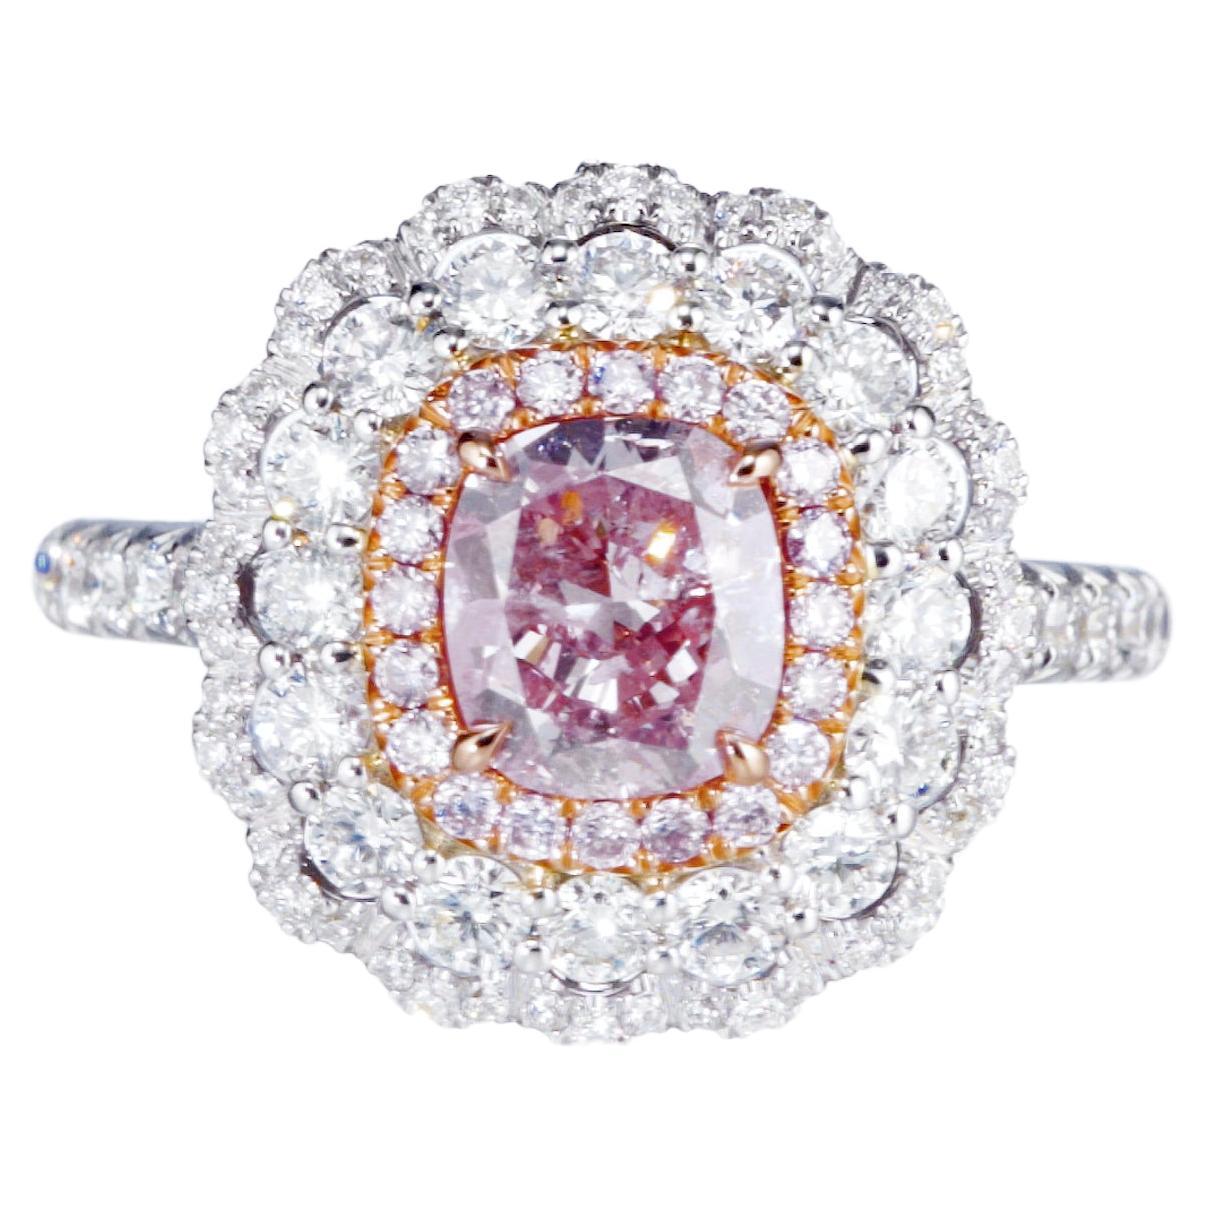 Bague en or 18 carats avec diamant rose fantaisie taille coussin de 1,04 carat, certifié GIA